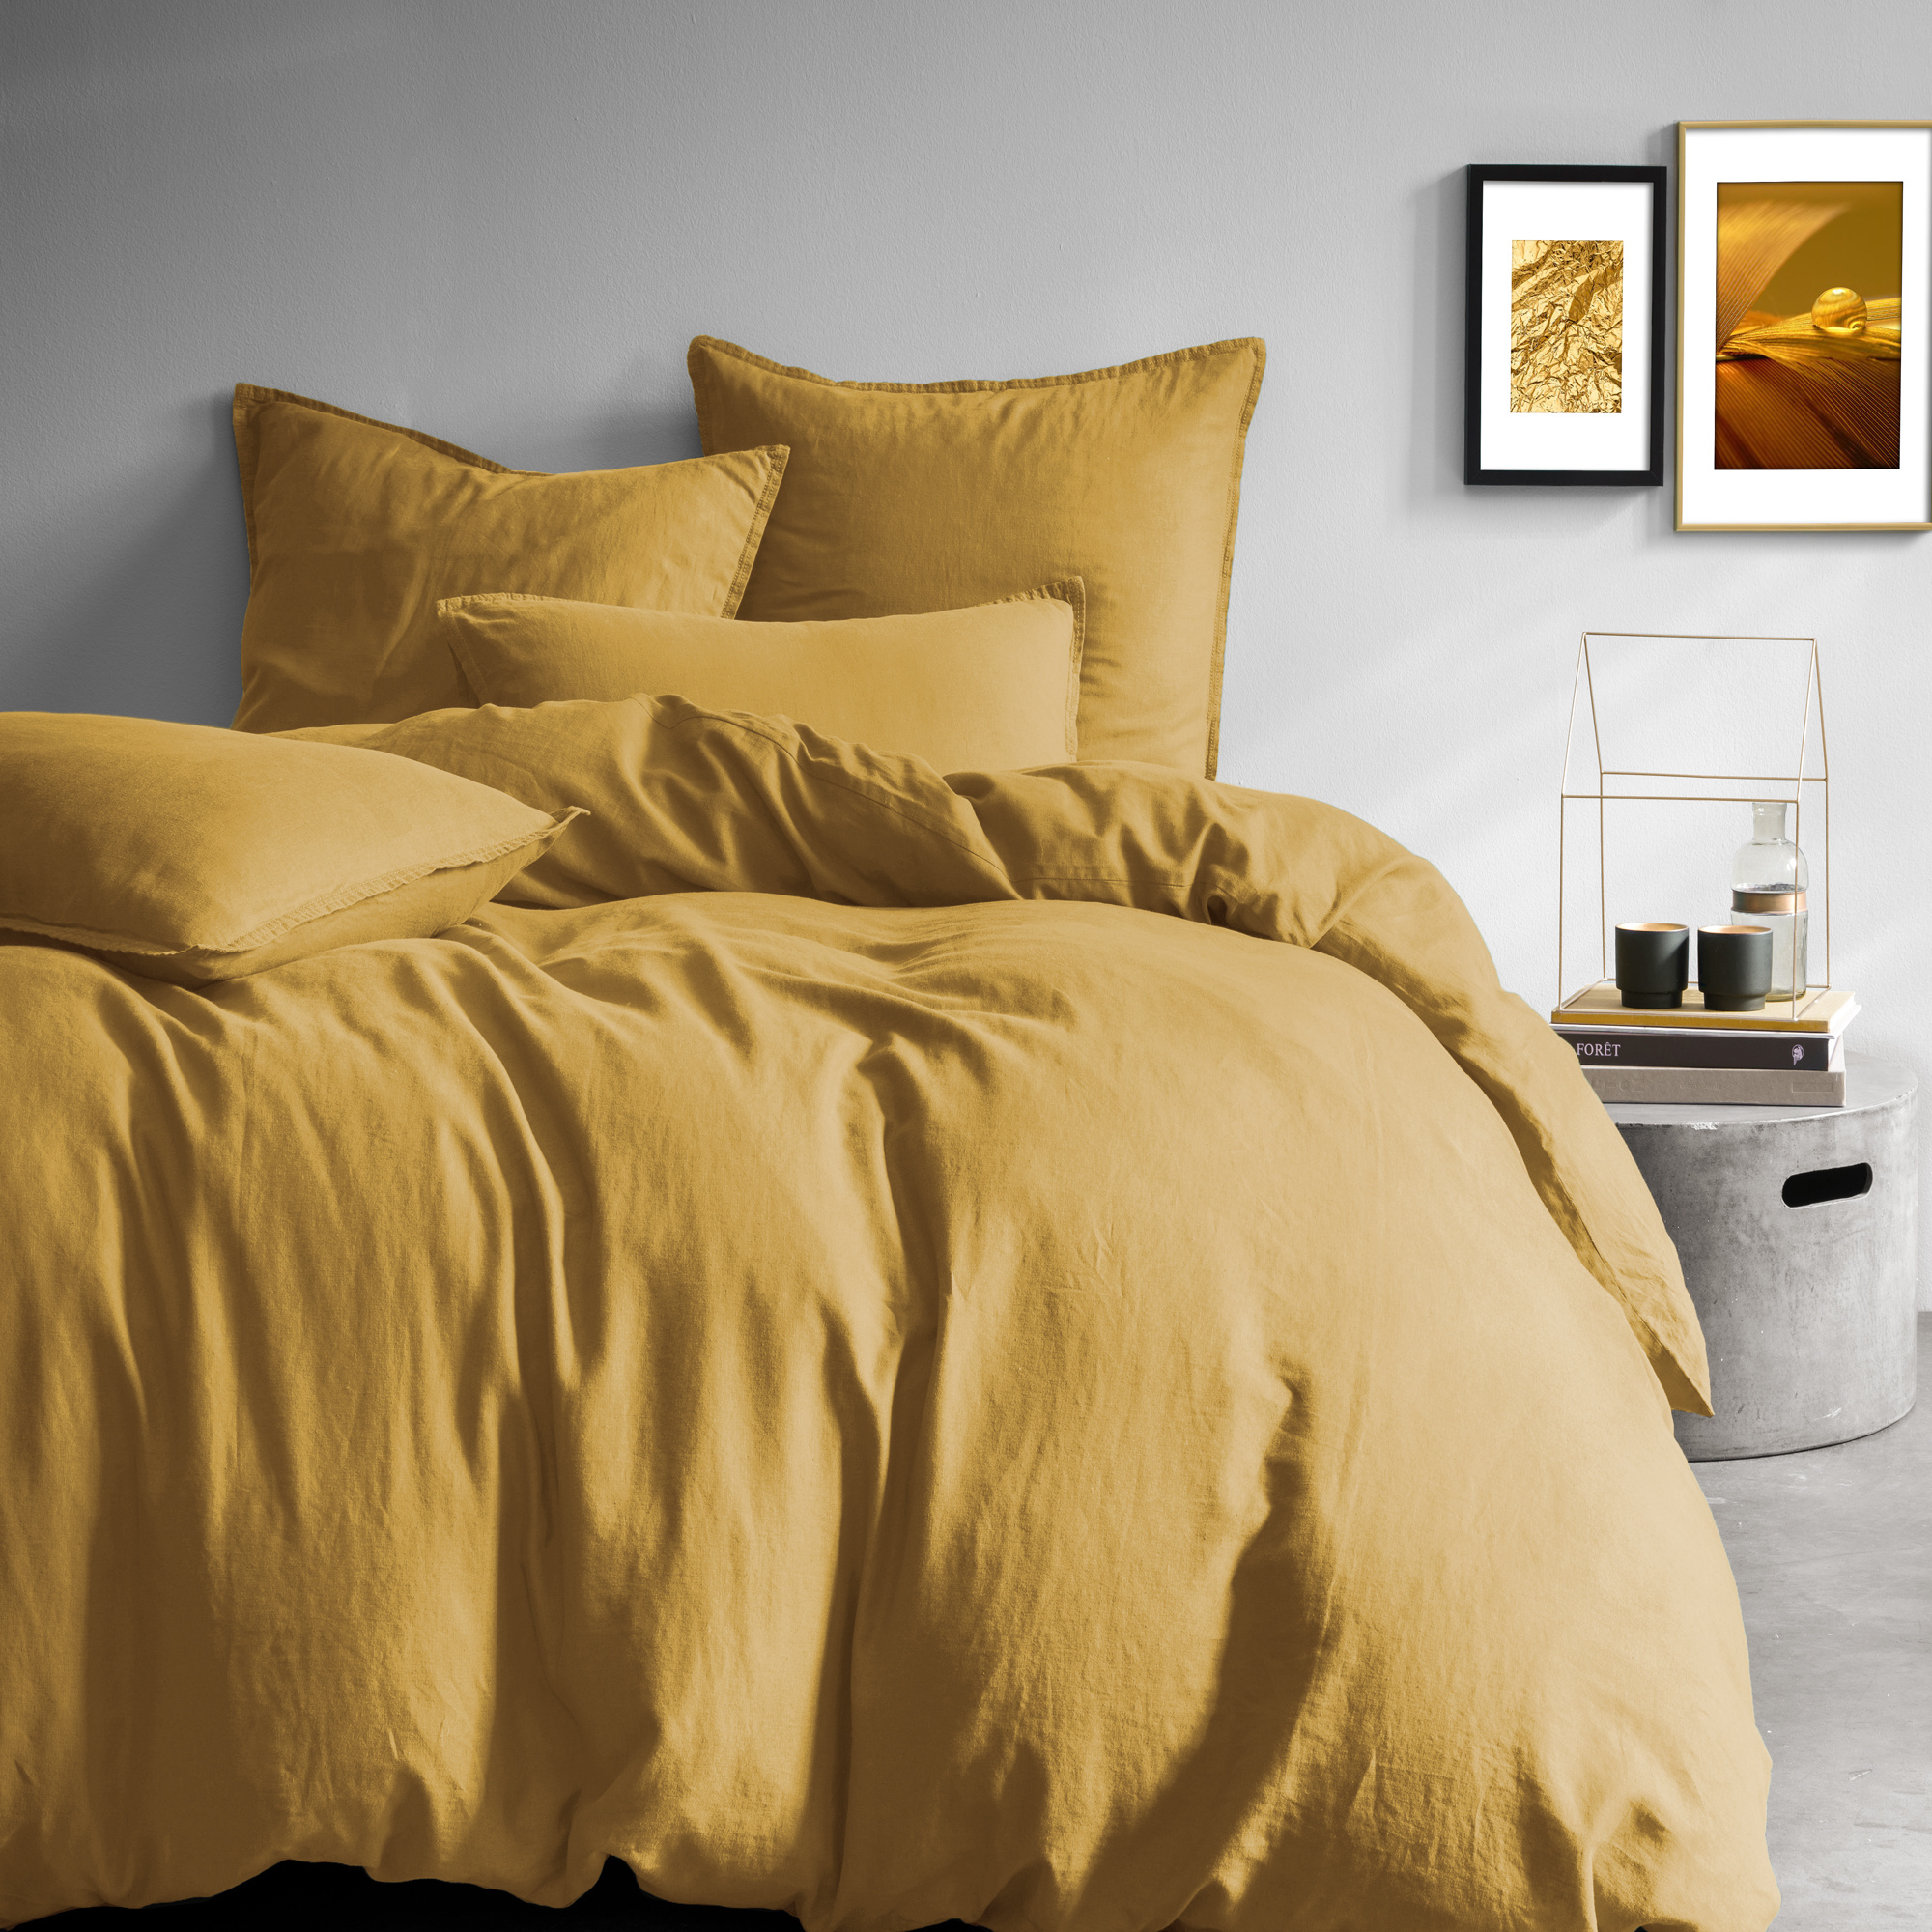 Matt & Rose Duvet cover Saffron - Lits Jumeaux - 240 x 220 cm, without pillowcases - 100% Linen